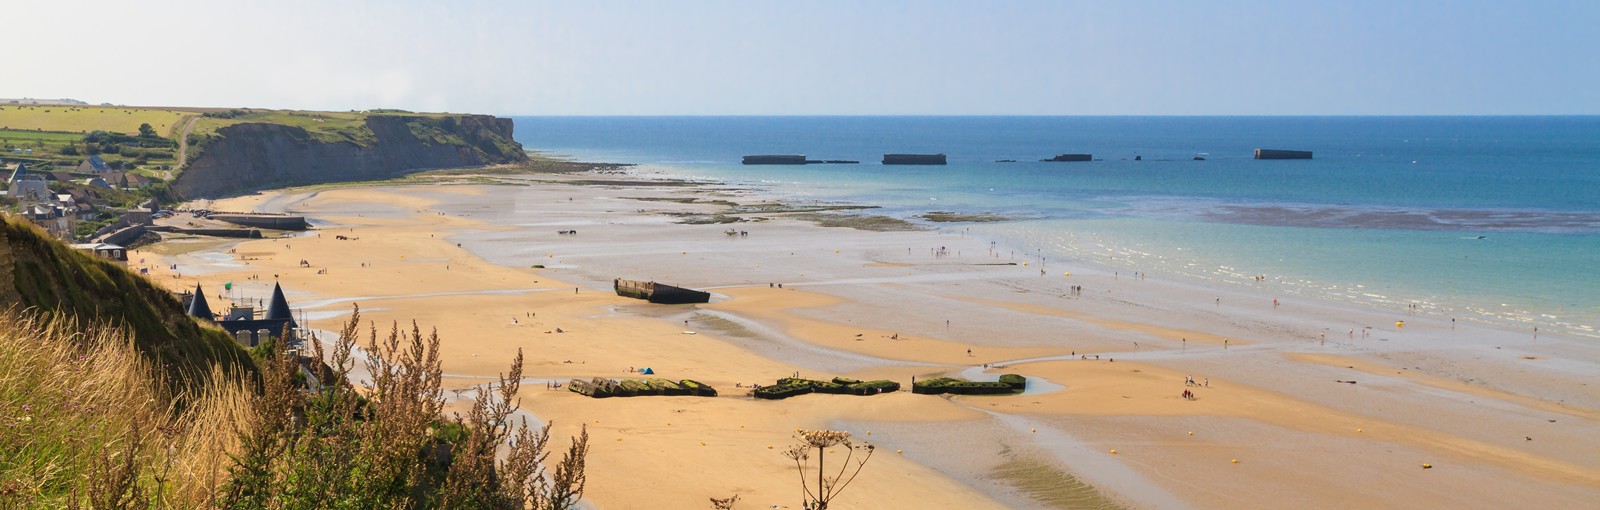 Tours 2 días en Normandía incluyendo las playas del desembarco y la Normandía cultural y turística - Normandía - TOURS REGIONALES